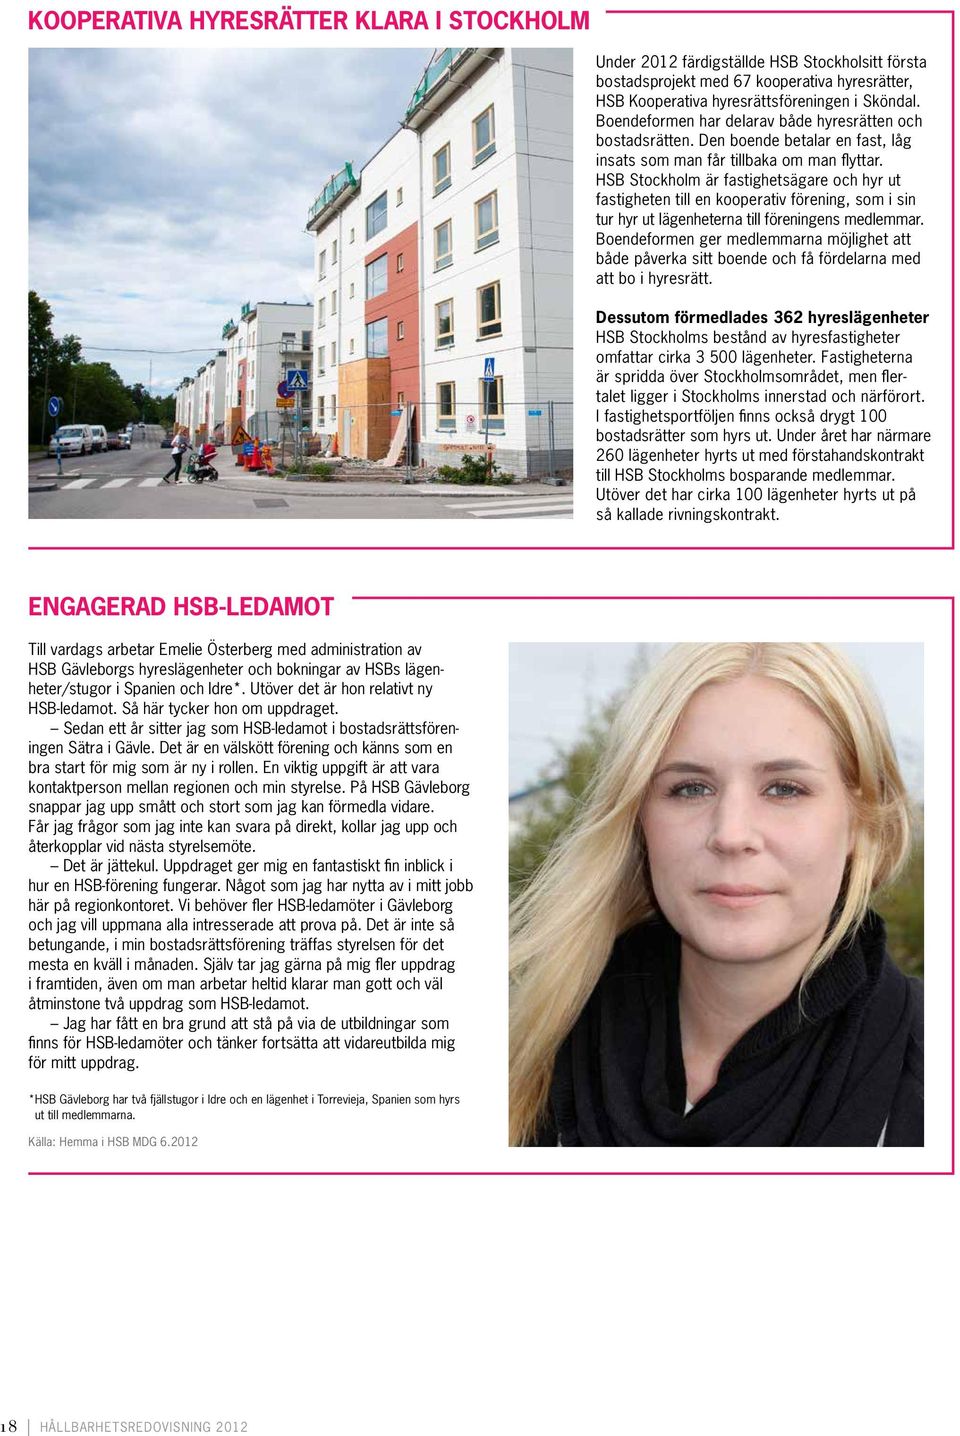 HSB Stockholm är fastighetsägare och hyr ut fastigheten till en kooperativ förening, som i sin tur hyr ut lägenheterna till föreningens medlemmar.